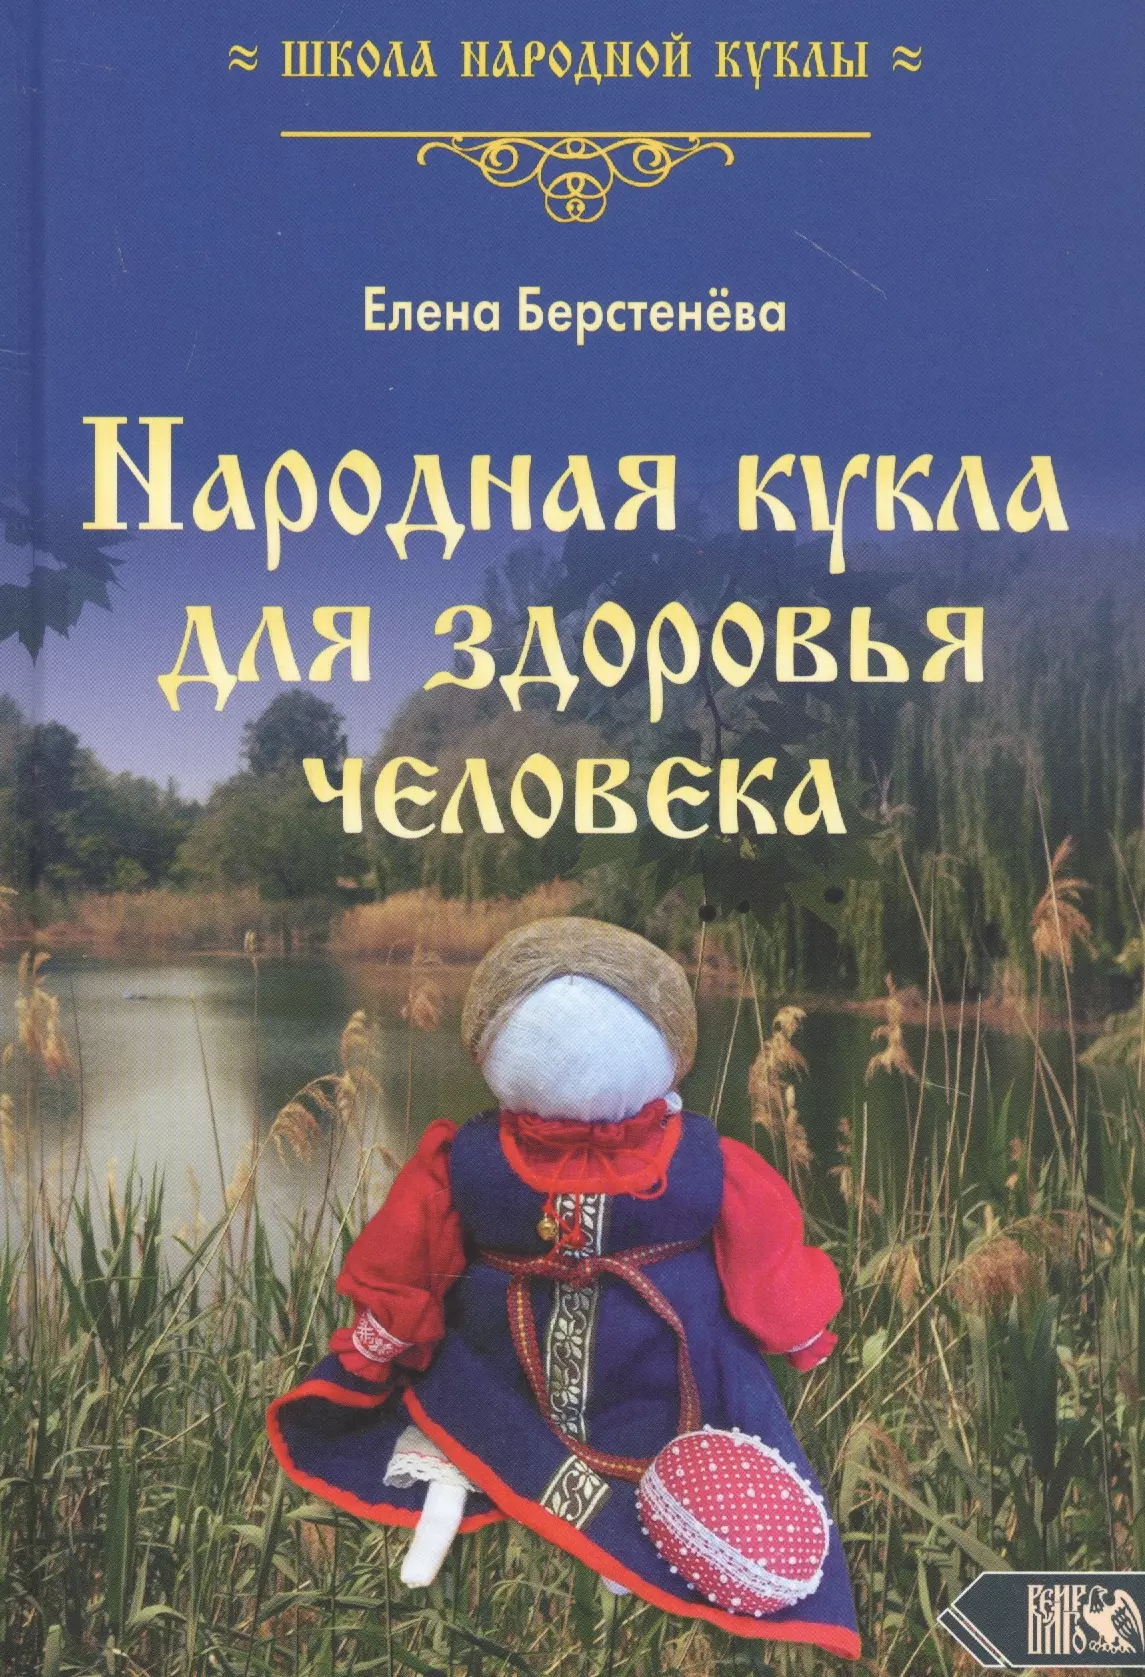 Берстенева Елена Вениаминовна - Народная кукла для здоровья человека. Книга 1